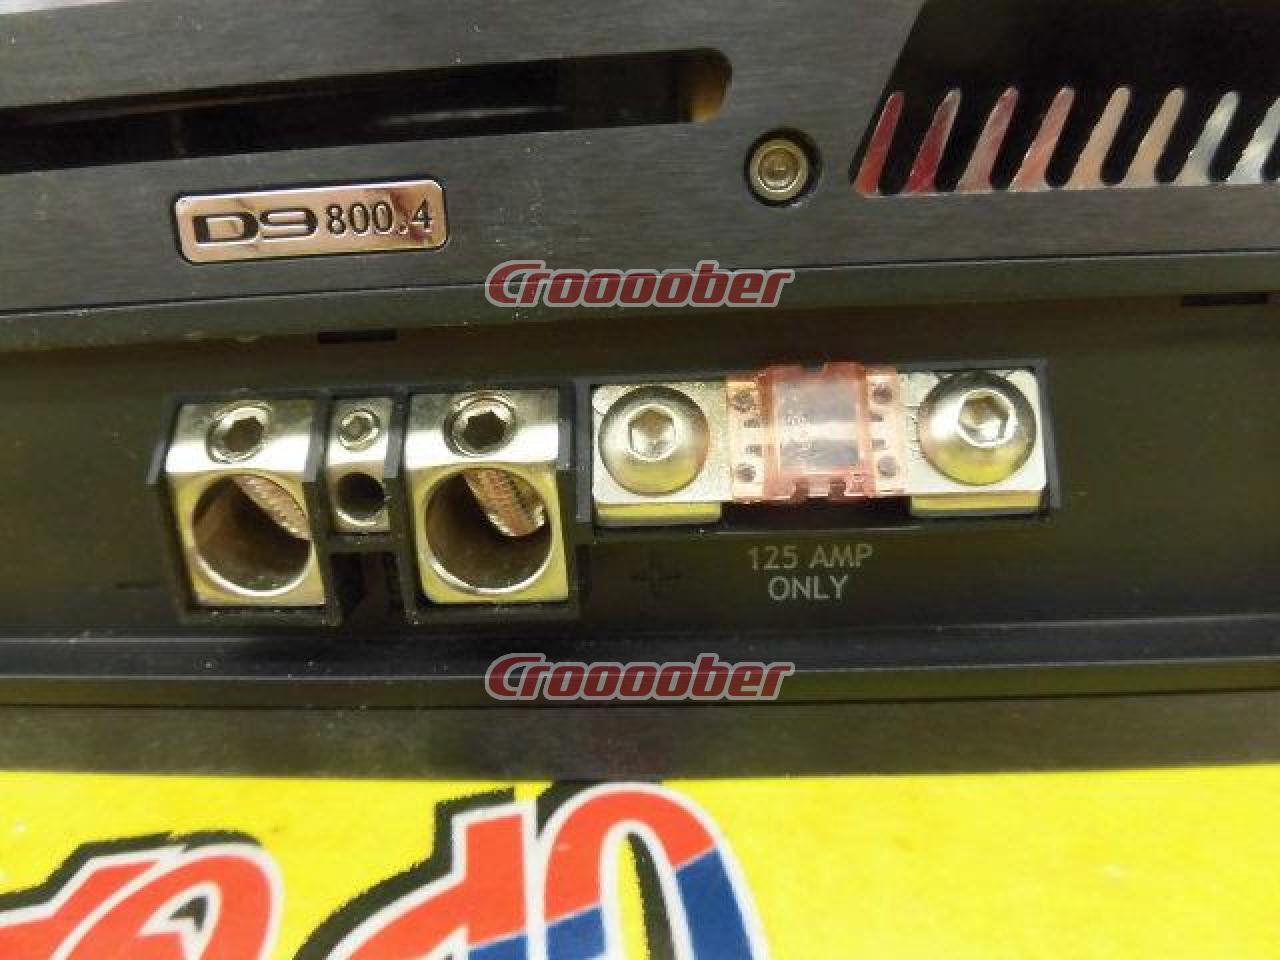 Diamond Audio D9 800.4 4ch Power Amplifier | Amplifier | Croooober